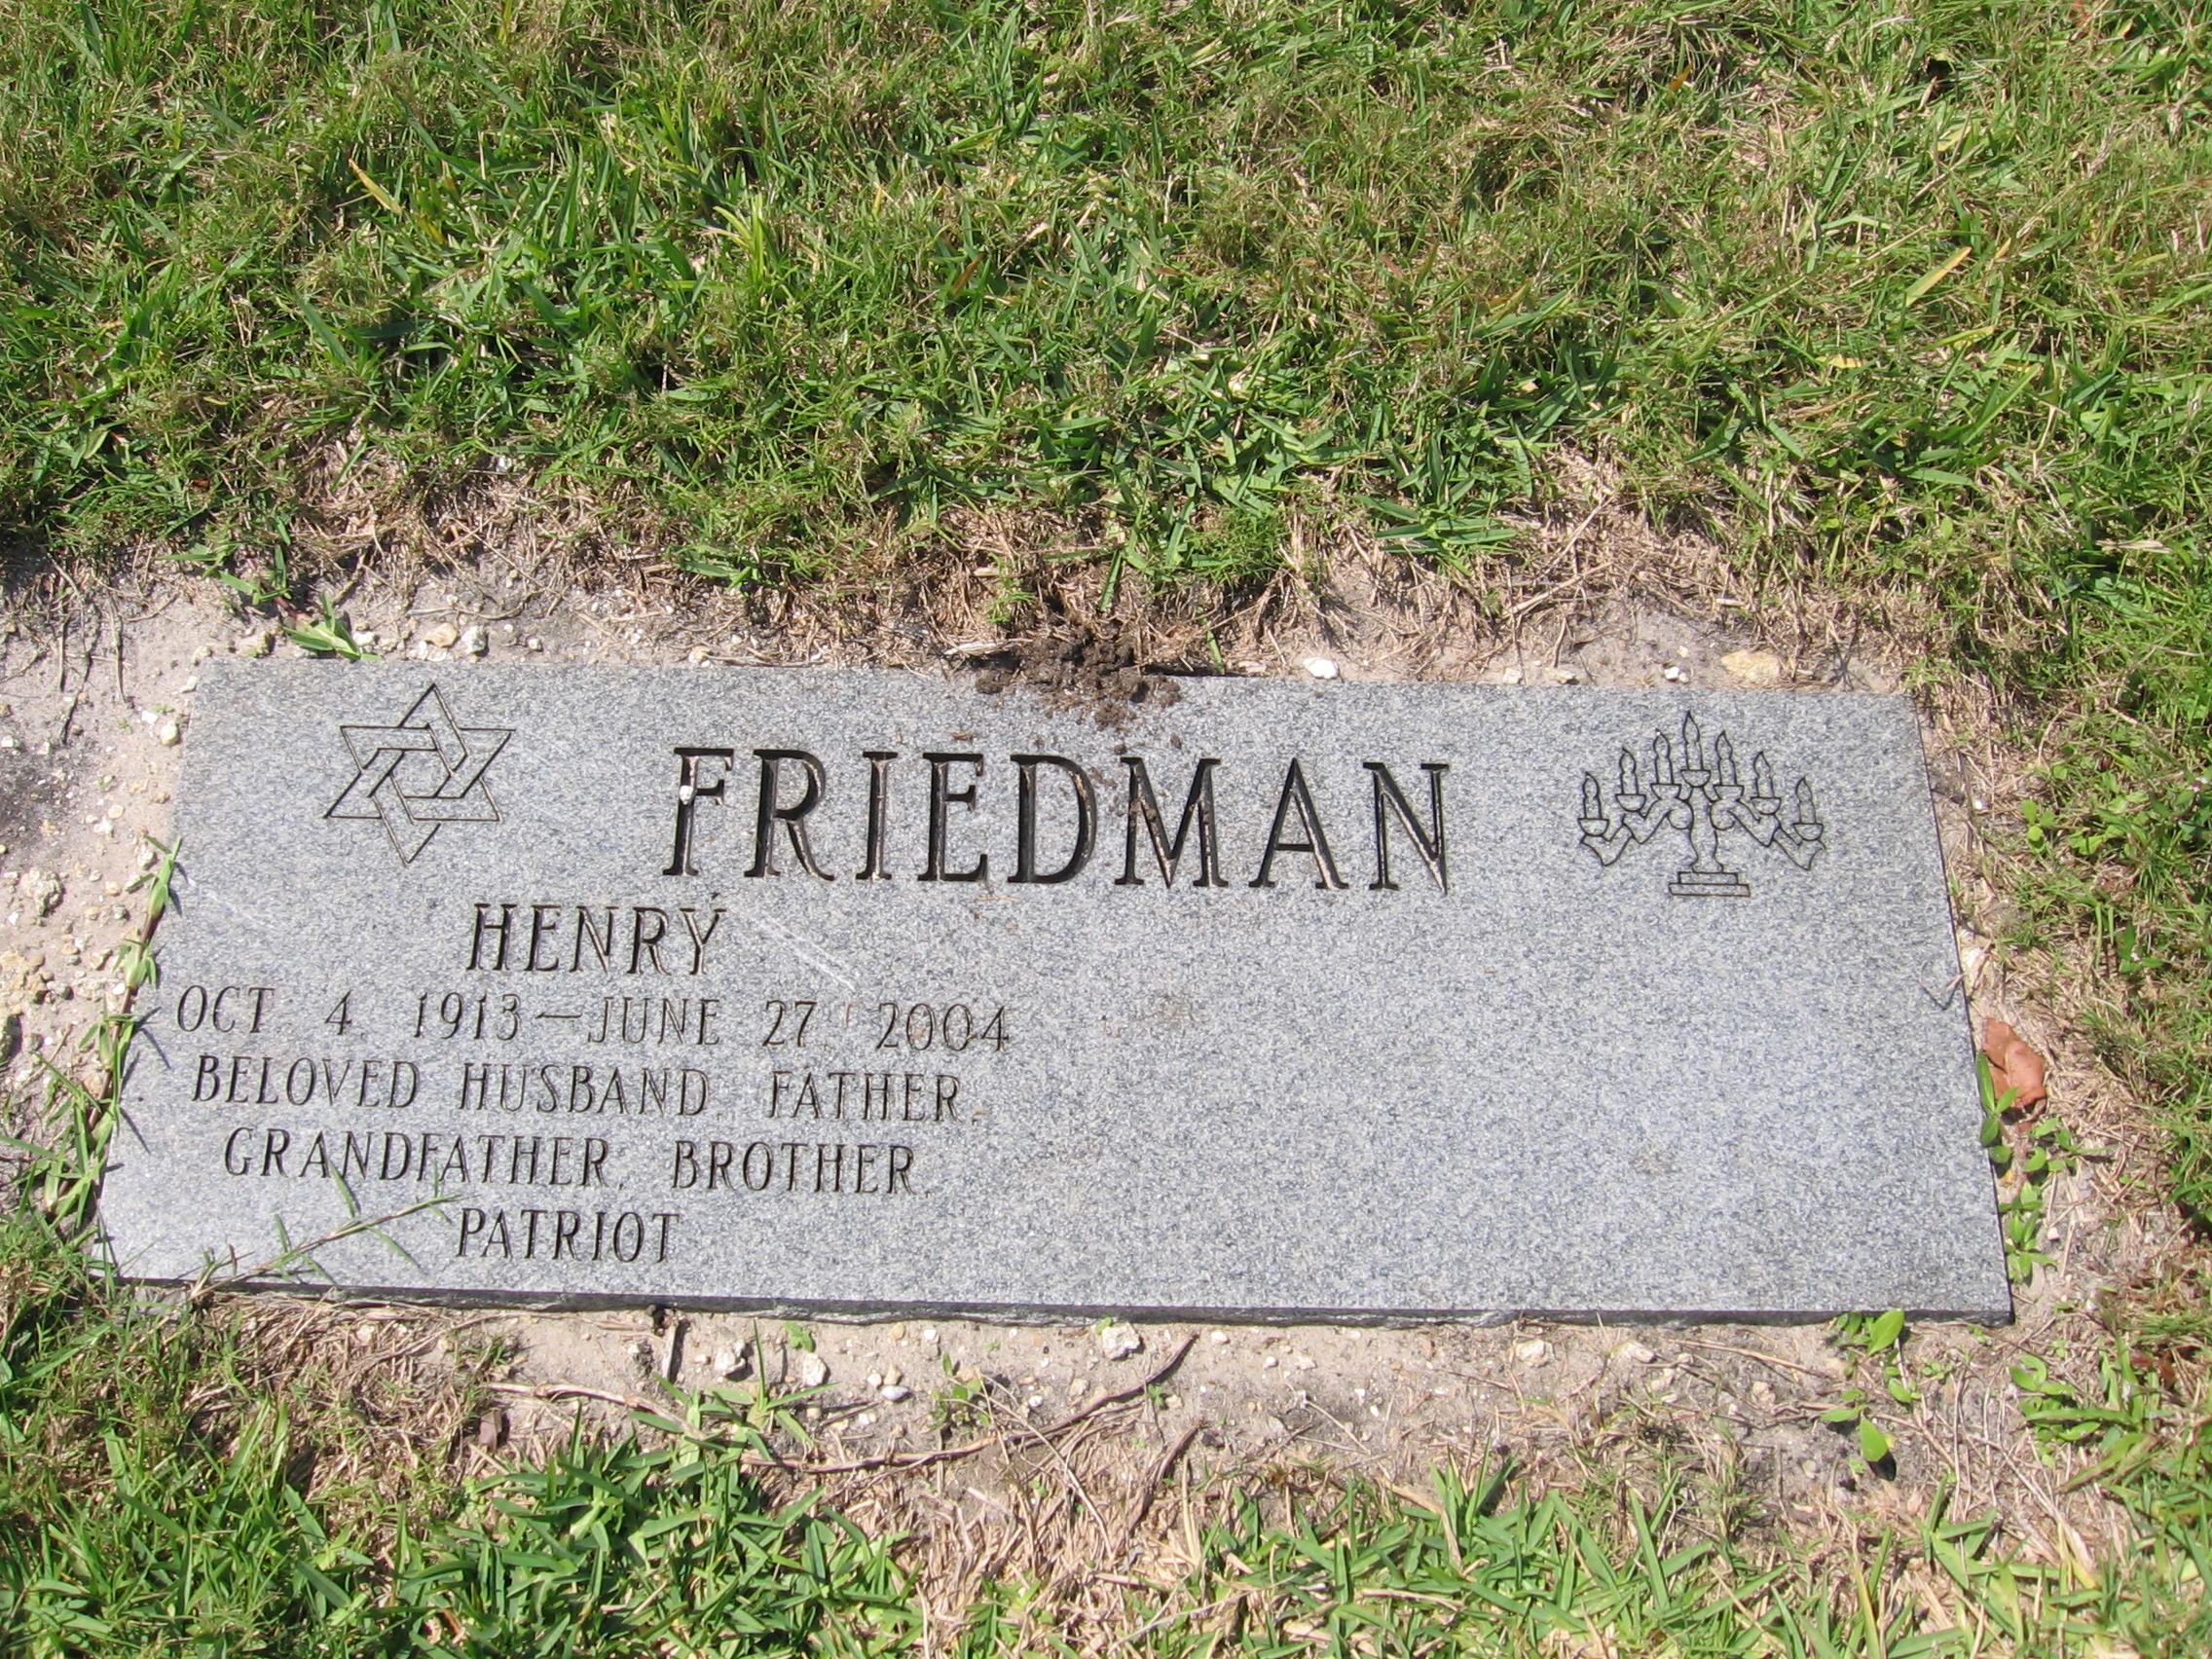 Henry Friedman